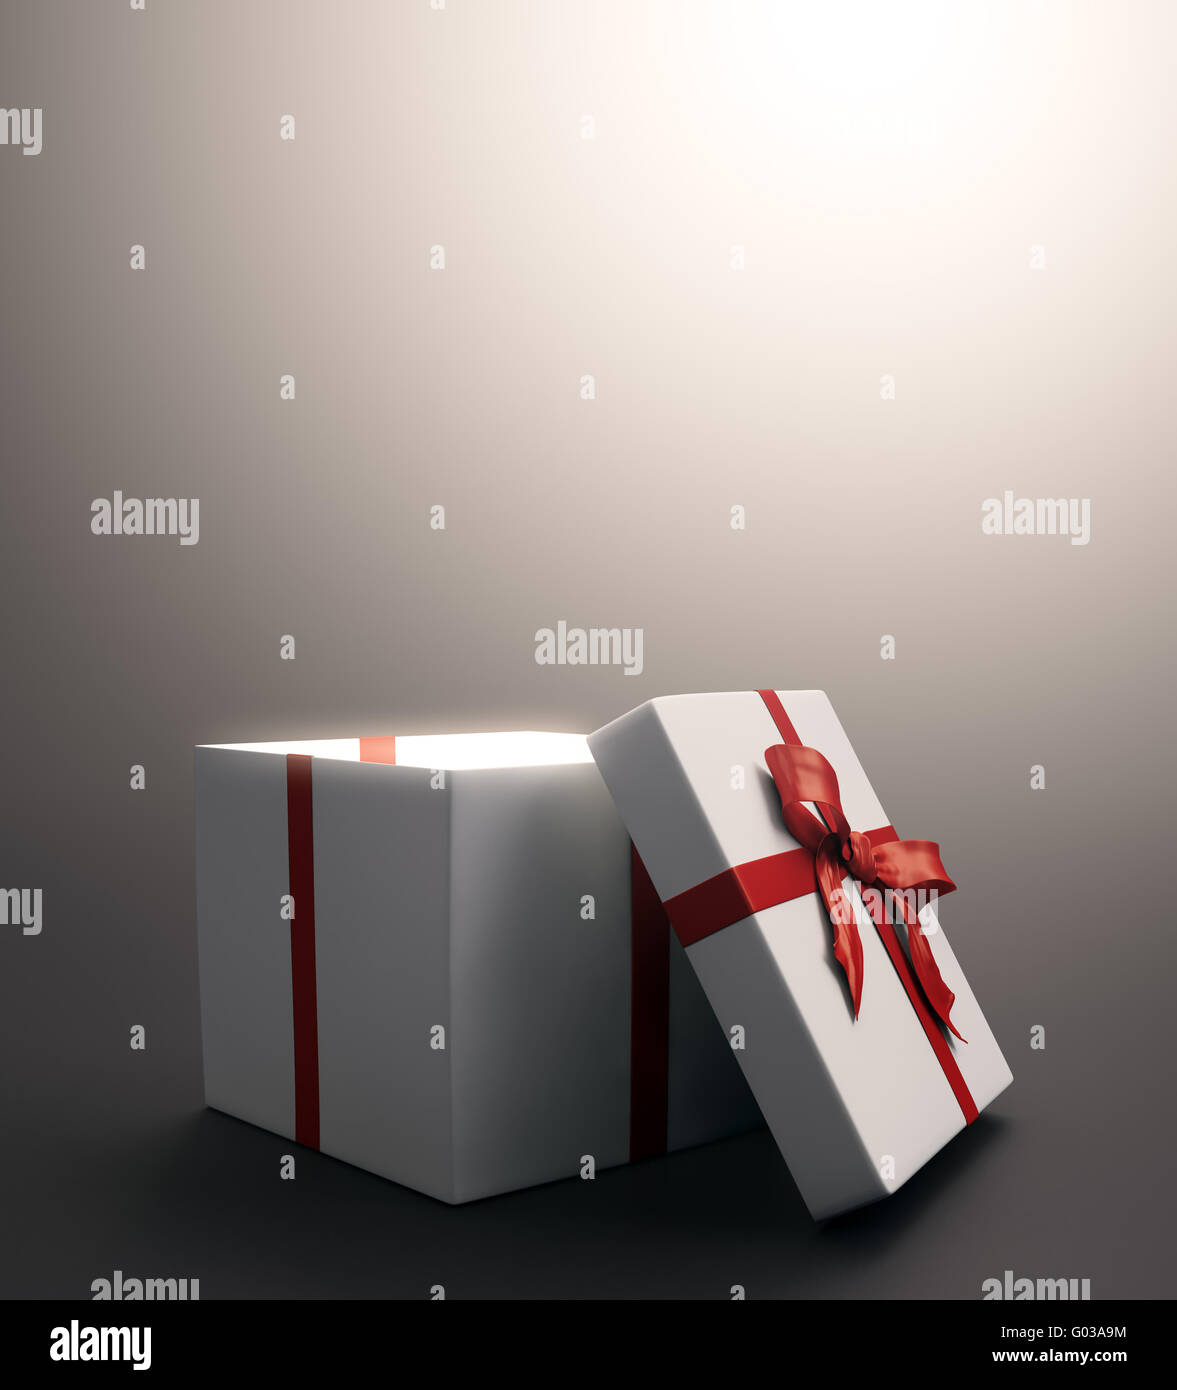 Weiße Geschenk mit einem roten Band - Weihnachts-Feier-Bild Stockfoto